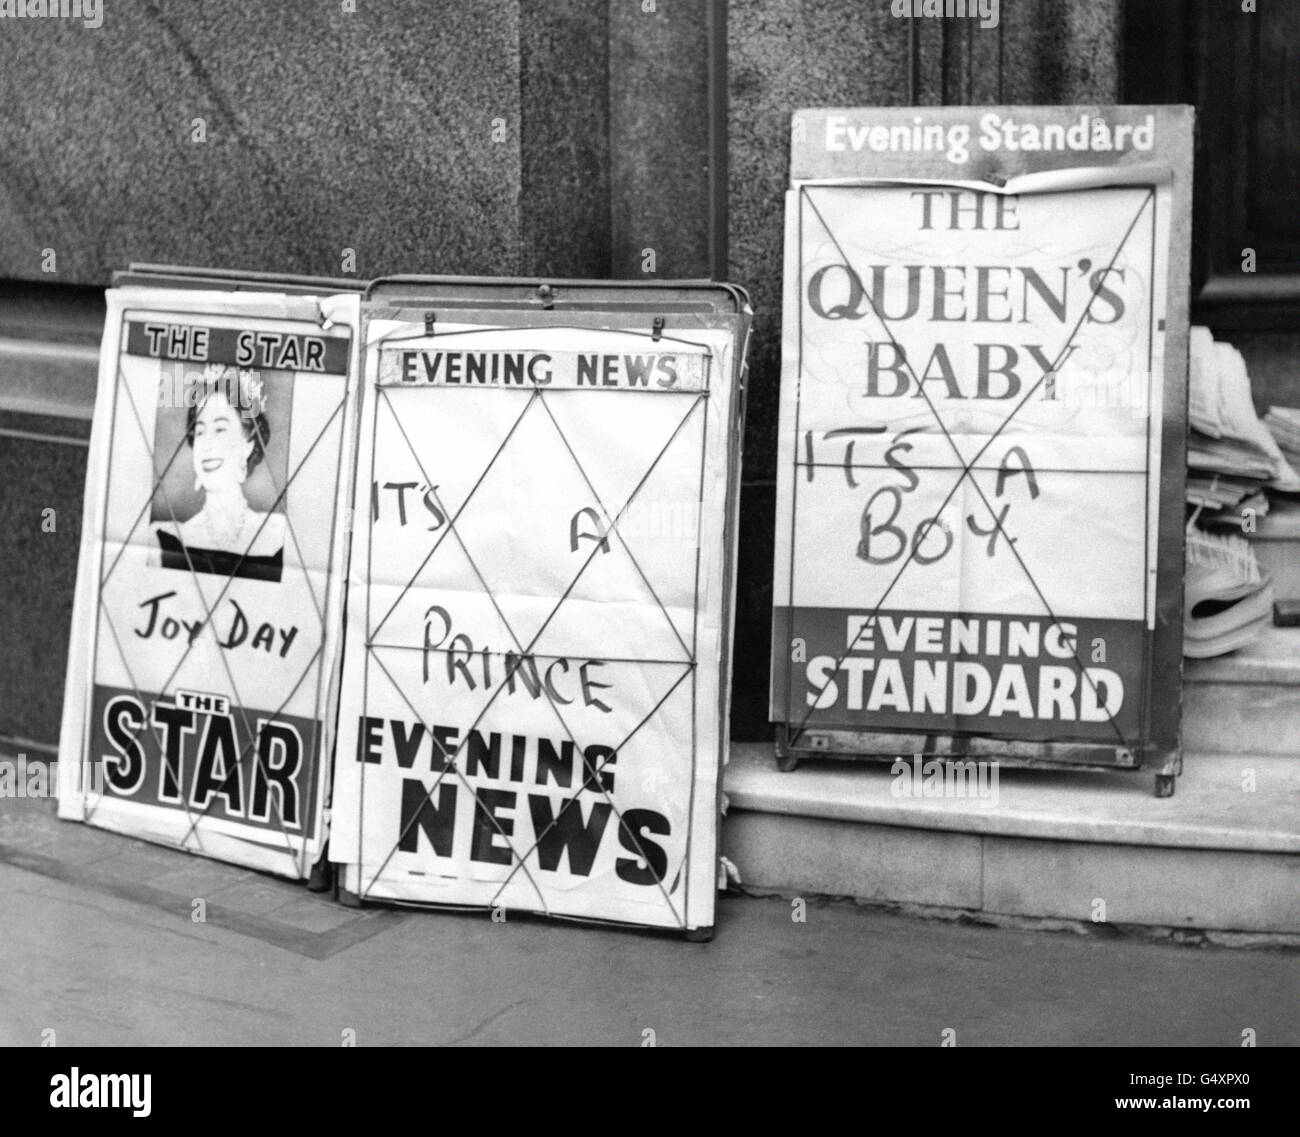 Les pancartes des journaux de Fleet Street racontent aux Londoniens la bonne nouvelle que la Reine ait donné naissance à un second fils - le premier bébé à être né à un souverain régnant pendant 102 ans. Banque D'Images